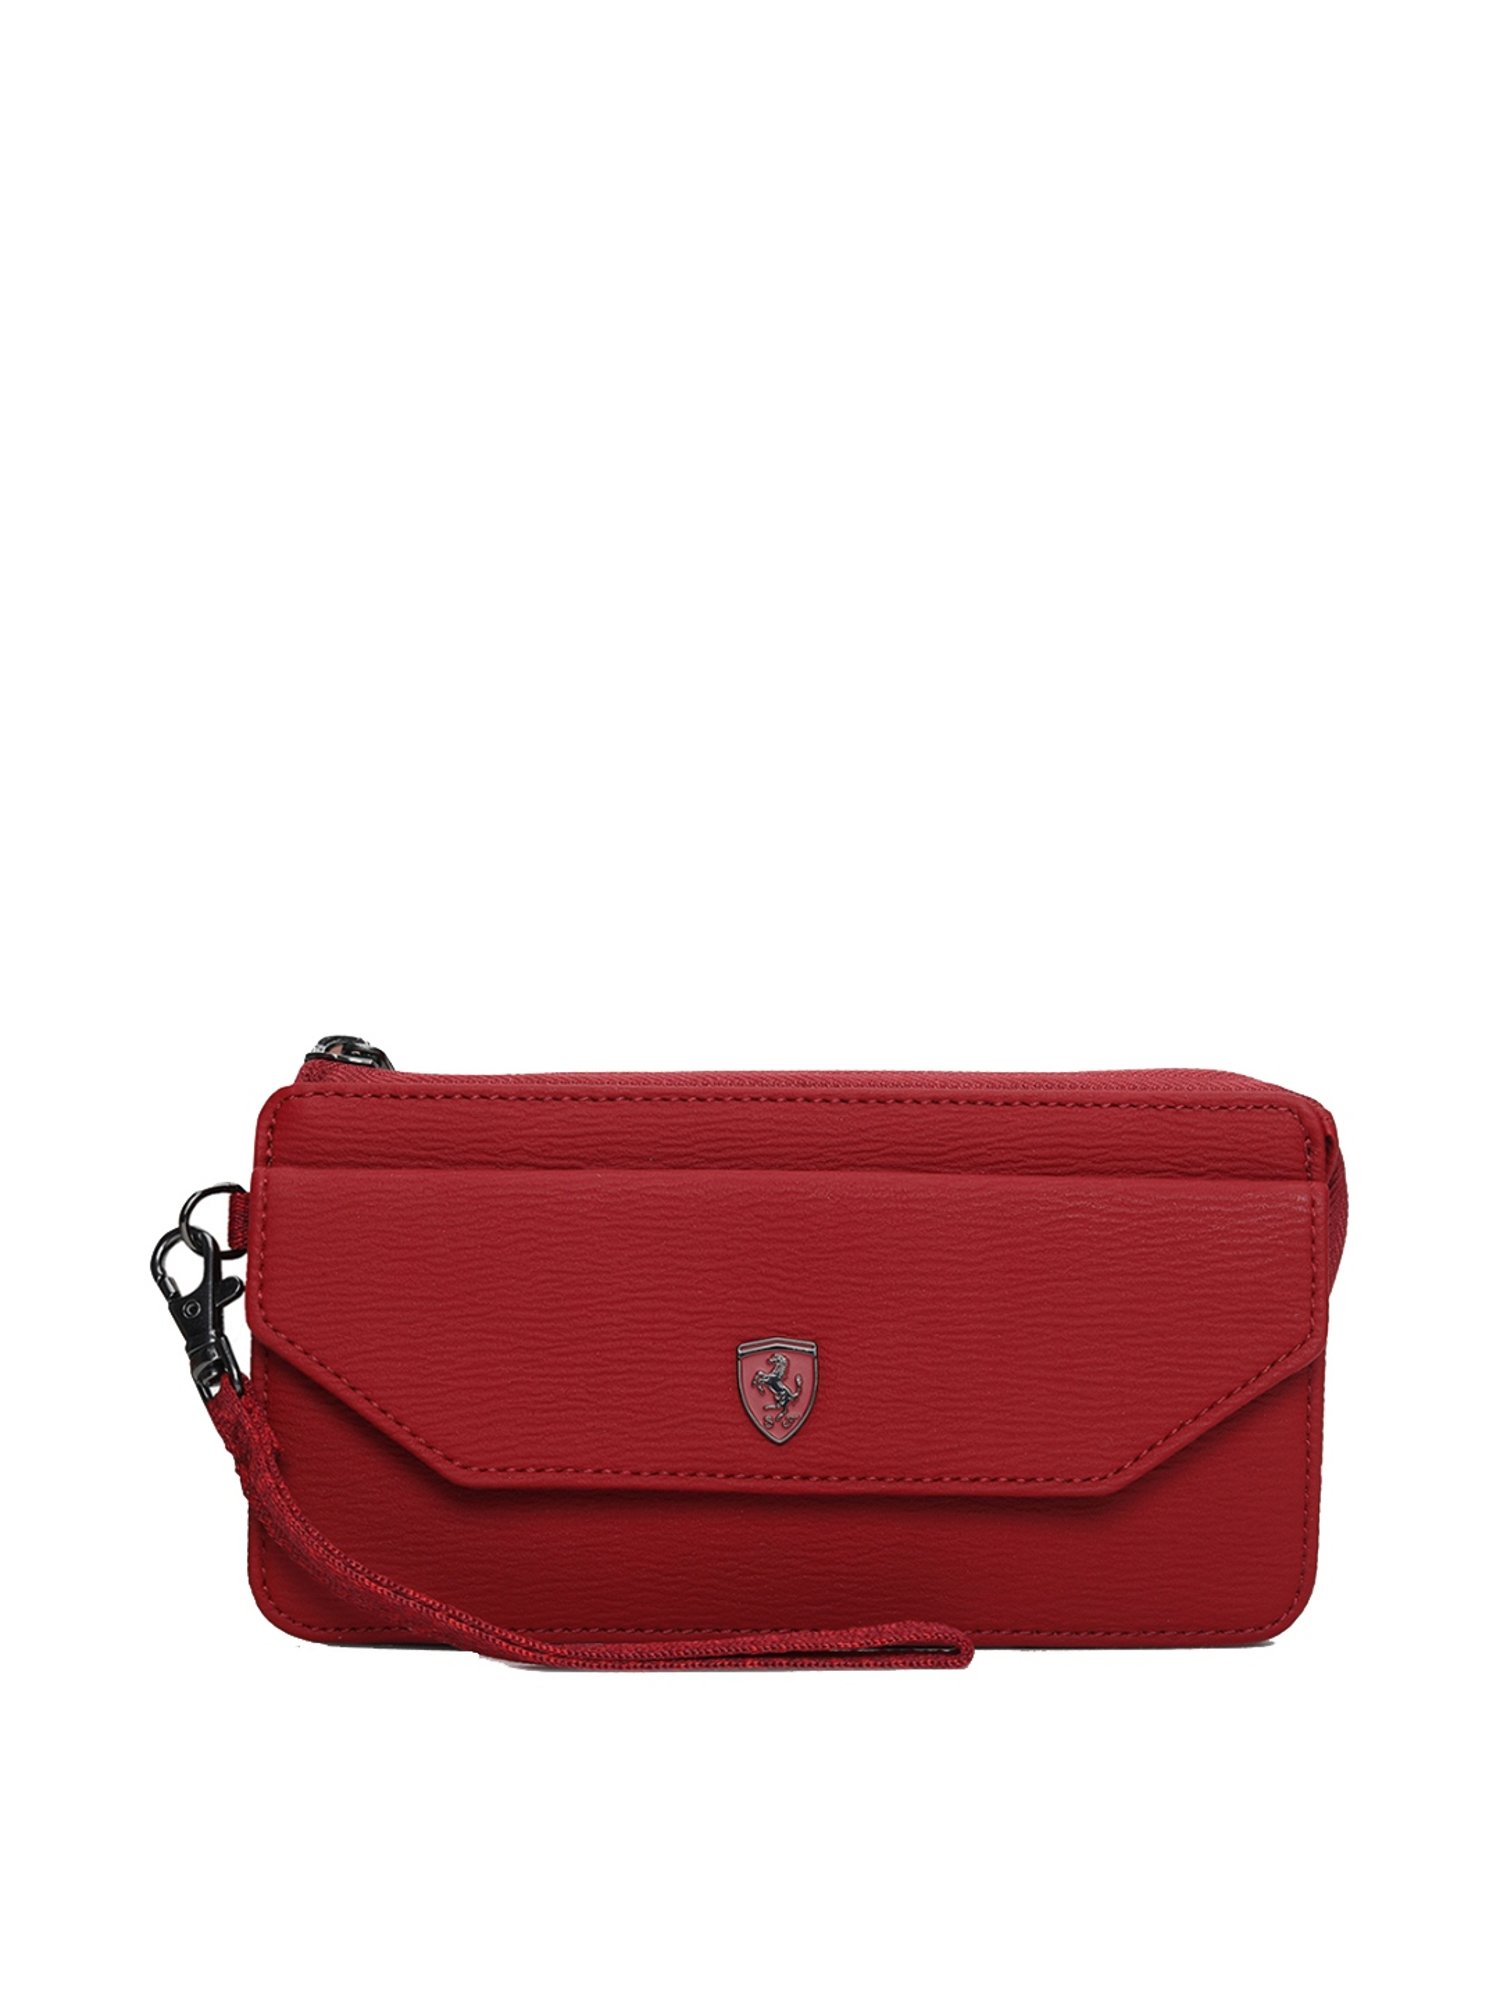 Puma Ferrari Long Wallet, Luxury, Bags & Wallets on Carousell